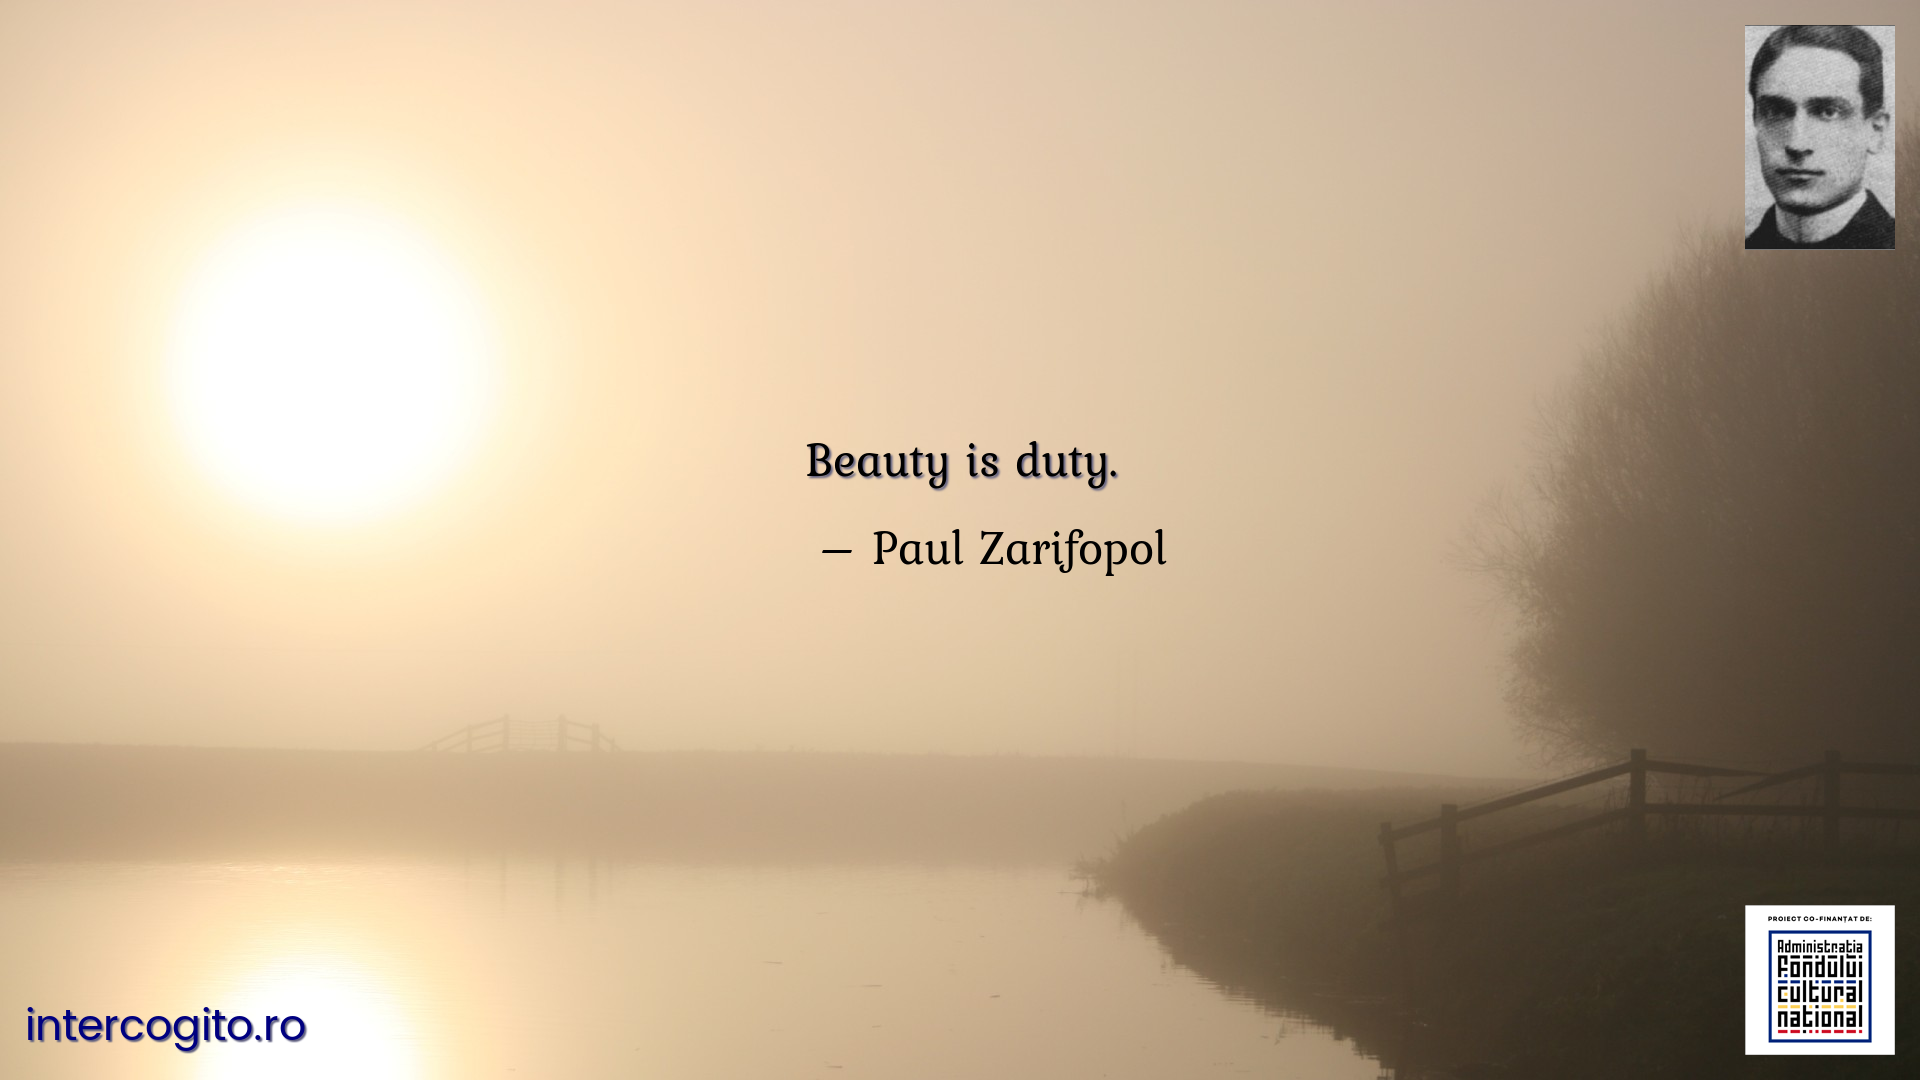 Beauty is duty.